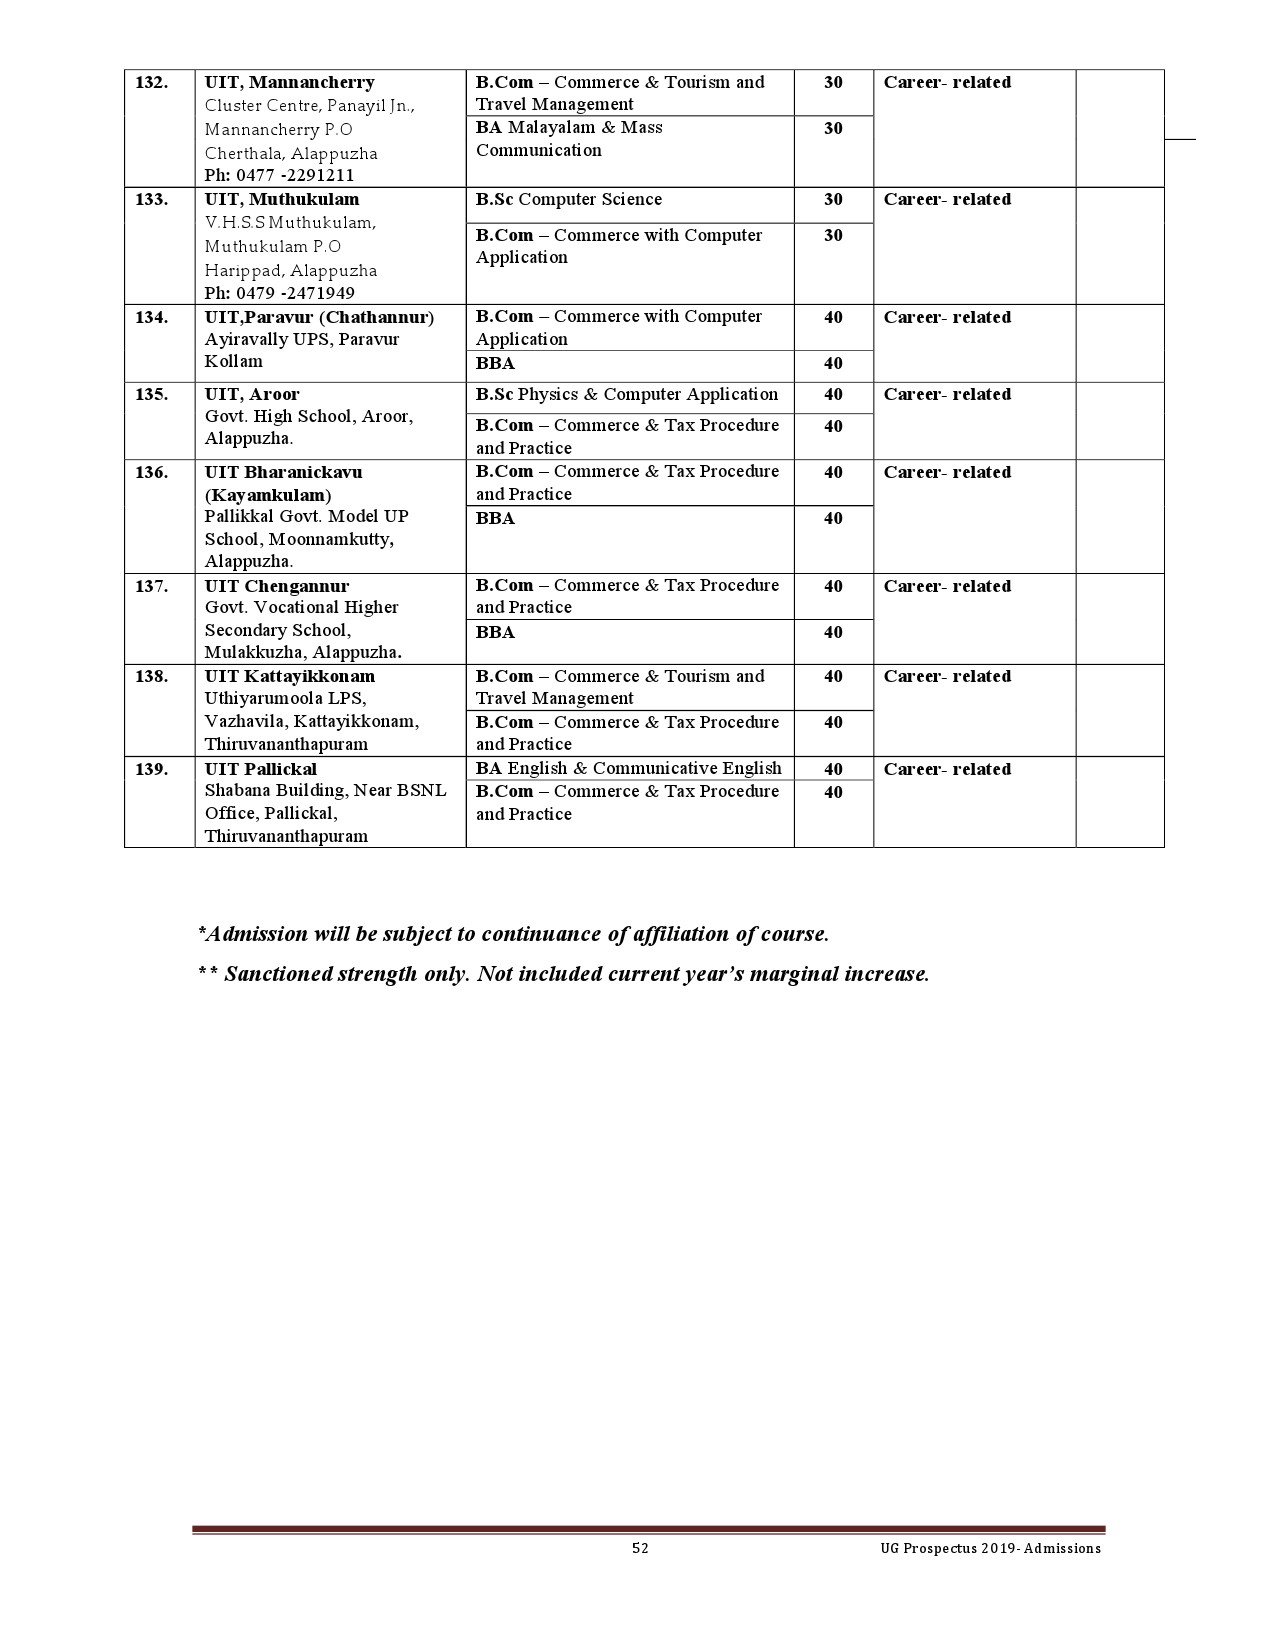 Kerala University UG Admission Prospectus 2019 - Notification Image 52